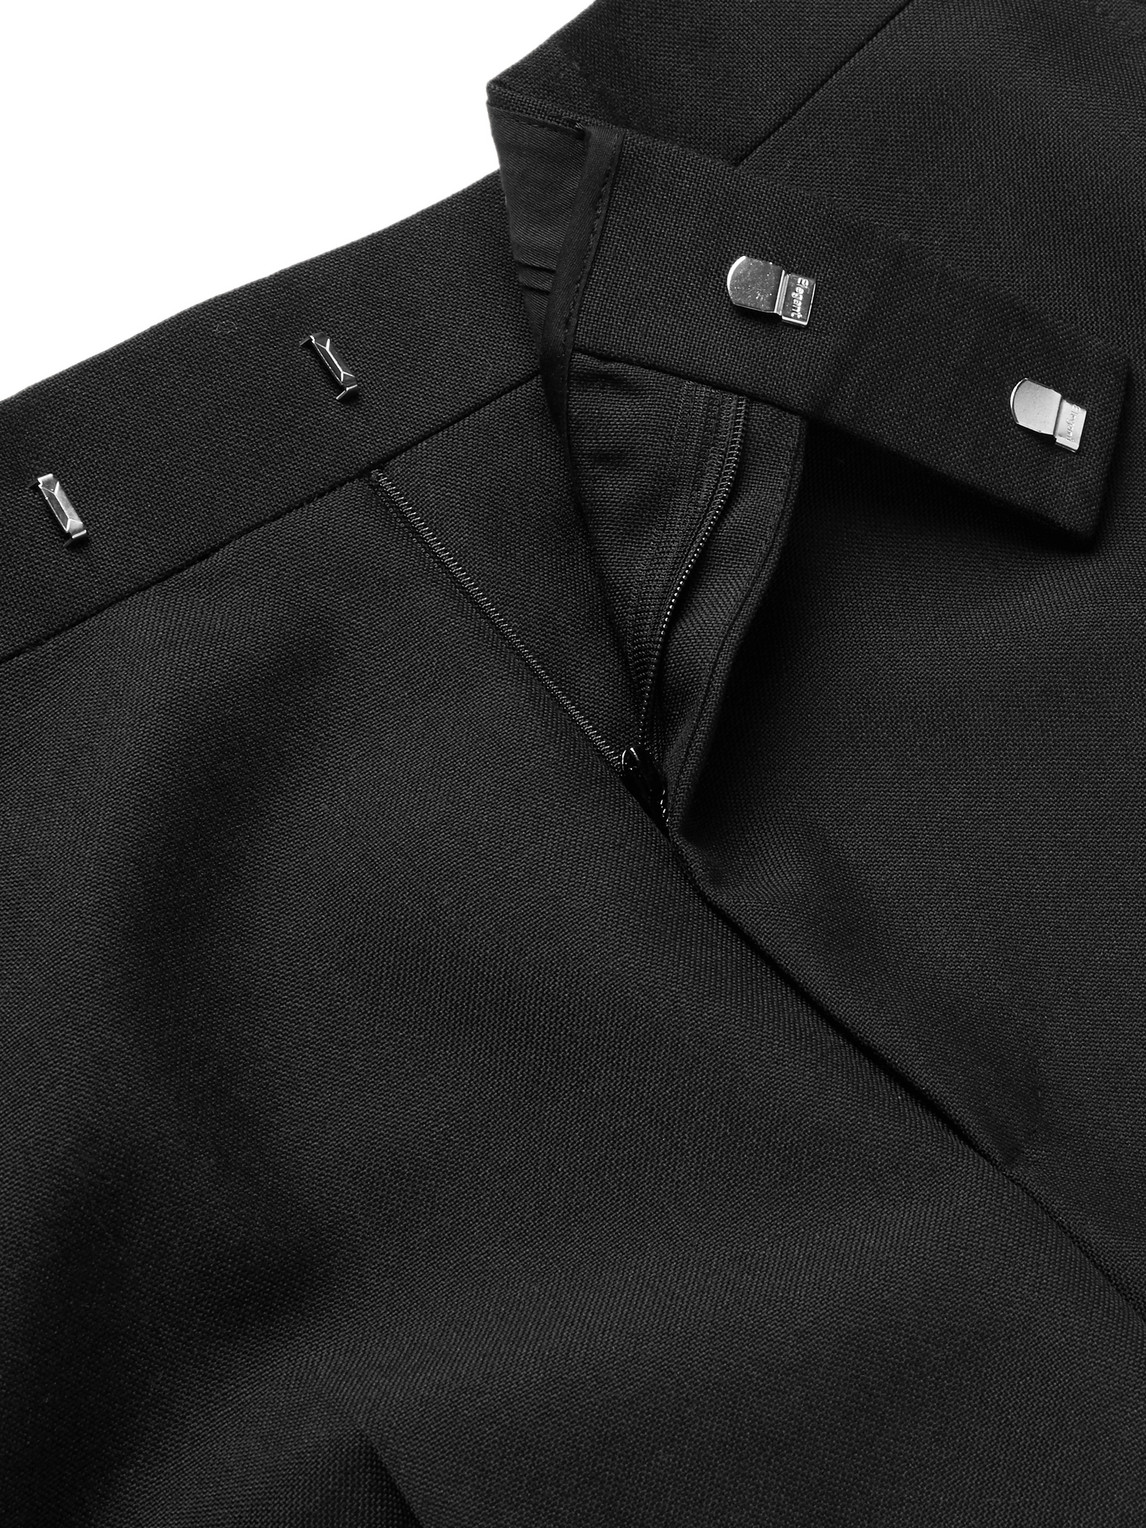 Kingsman | Kingsman - Eggsy's Black Wool and Mohair-Blend Tuxedo Trousers -  Men - Black - IT 46 | Shoppingscanner